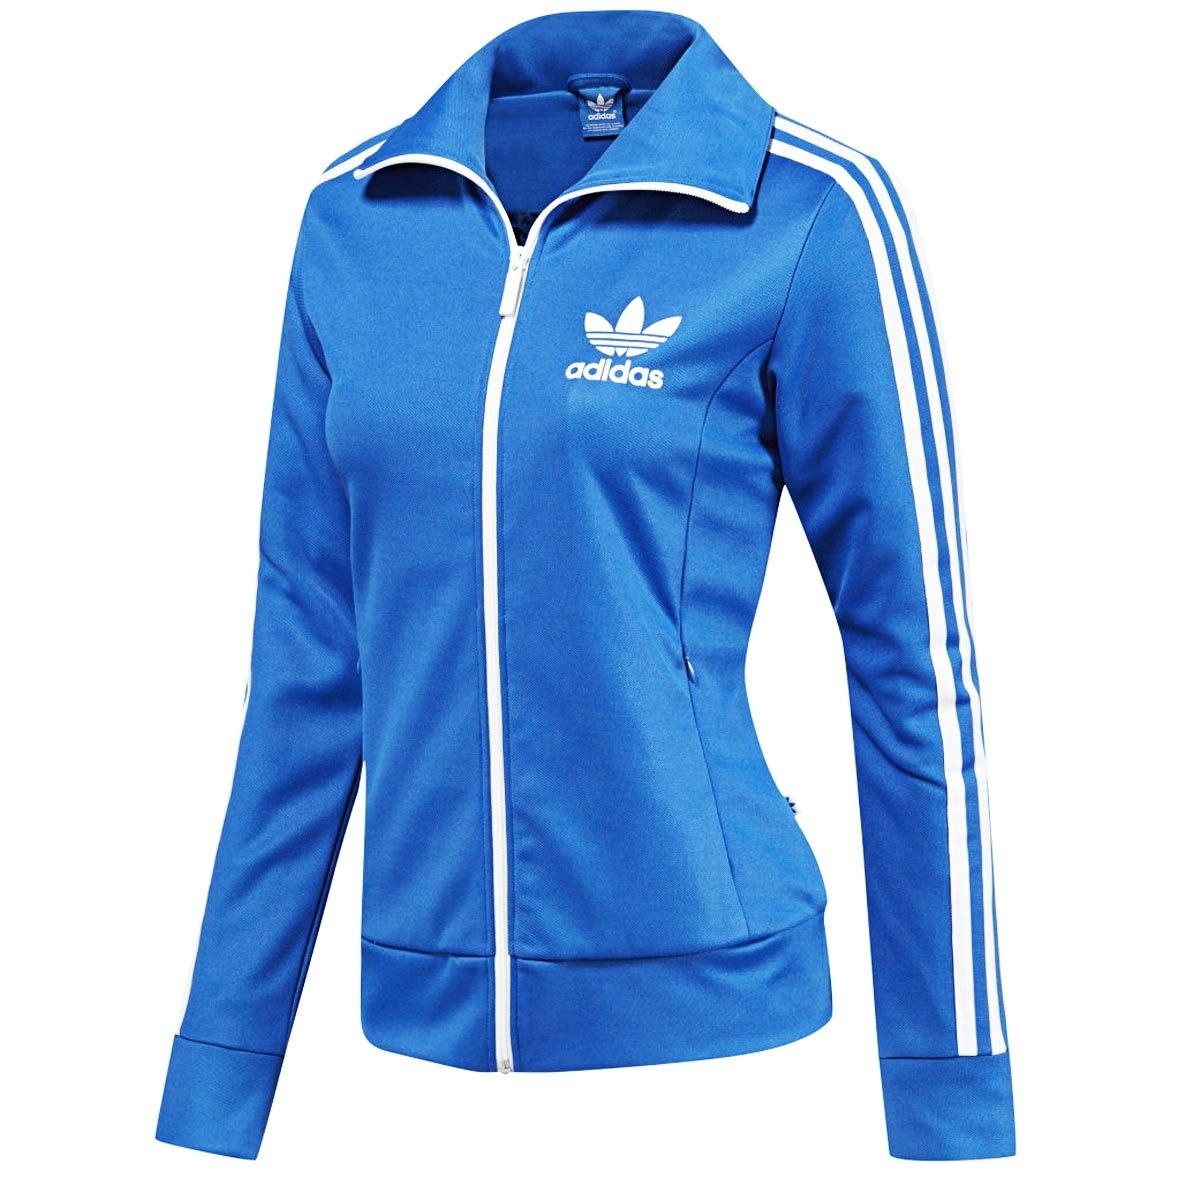 Интернет спортивной женской одежды. Tracksuit adidas женский. Adidas track Top женская. Adidas clime365 женский костюм. Олимпийка адидас женская синяя.